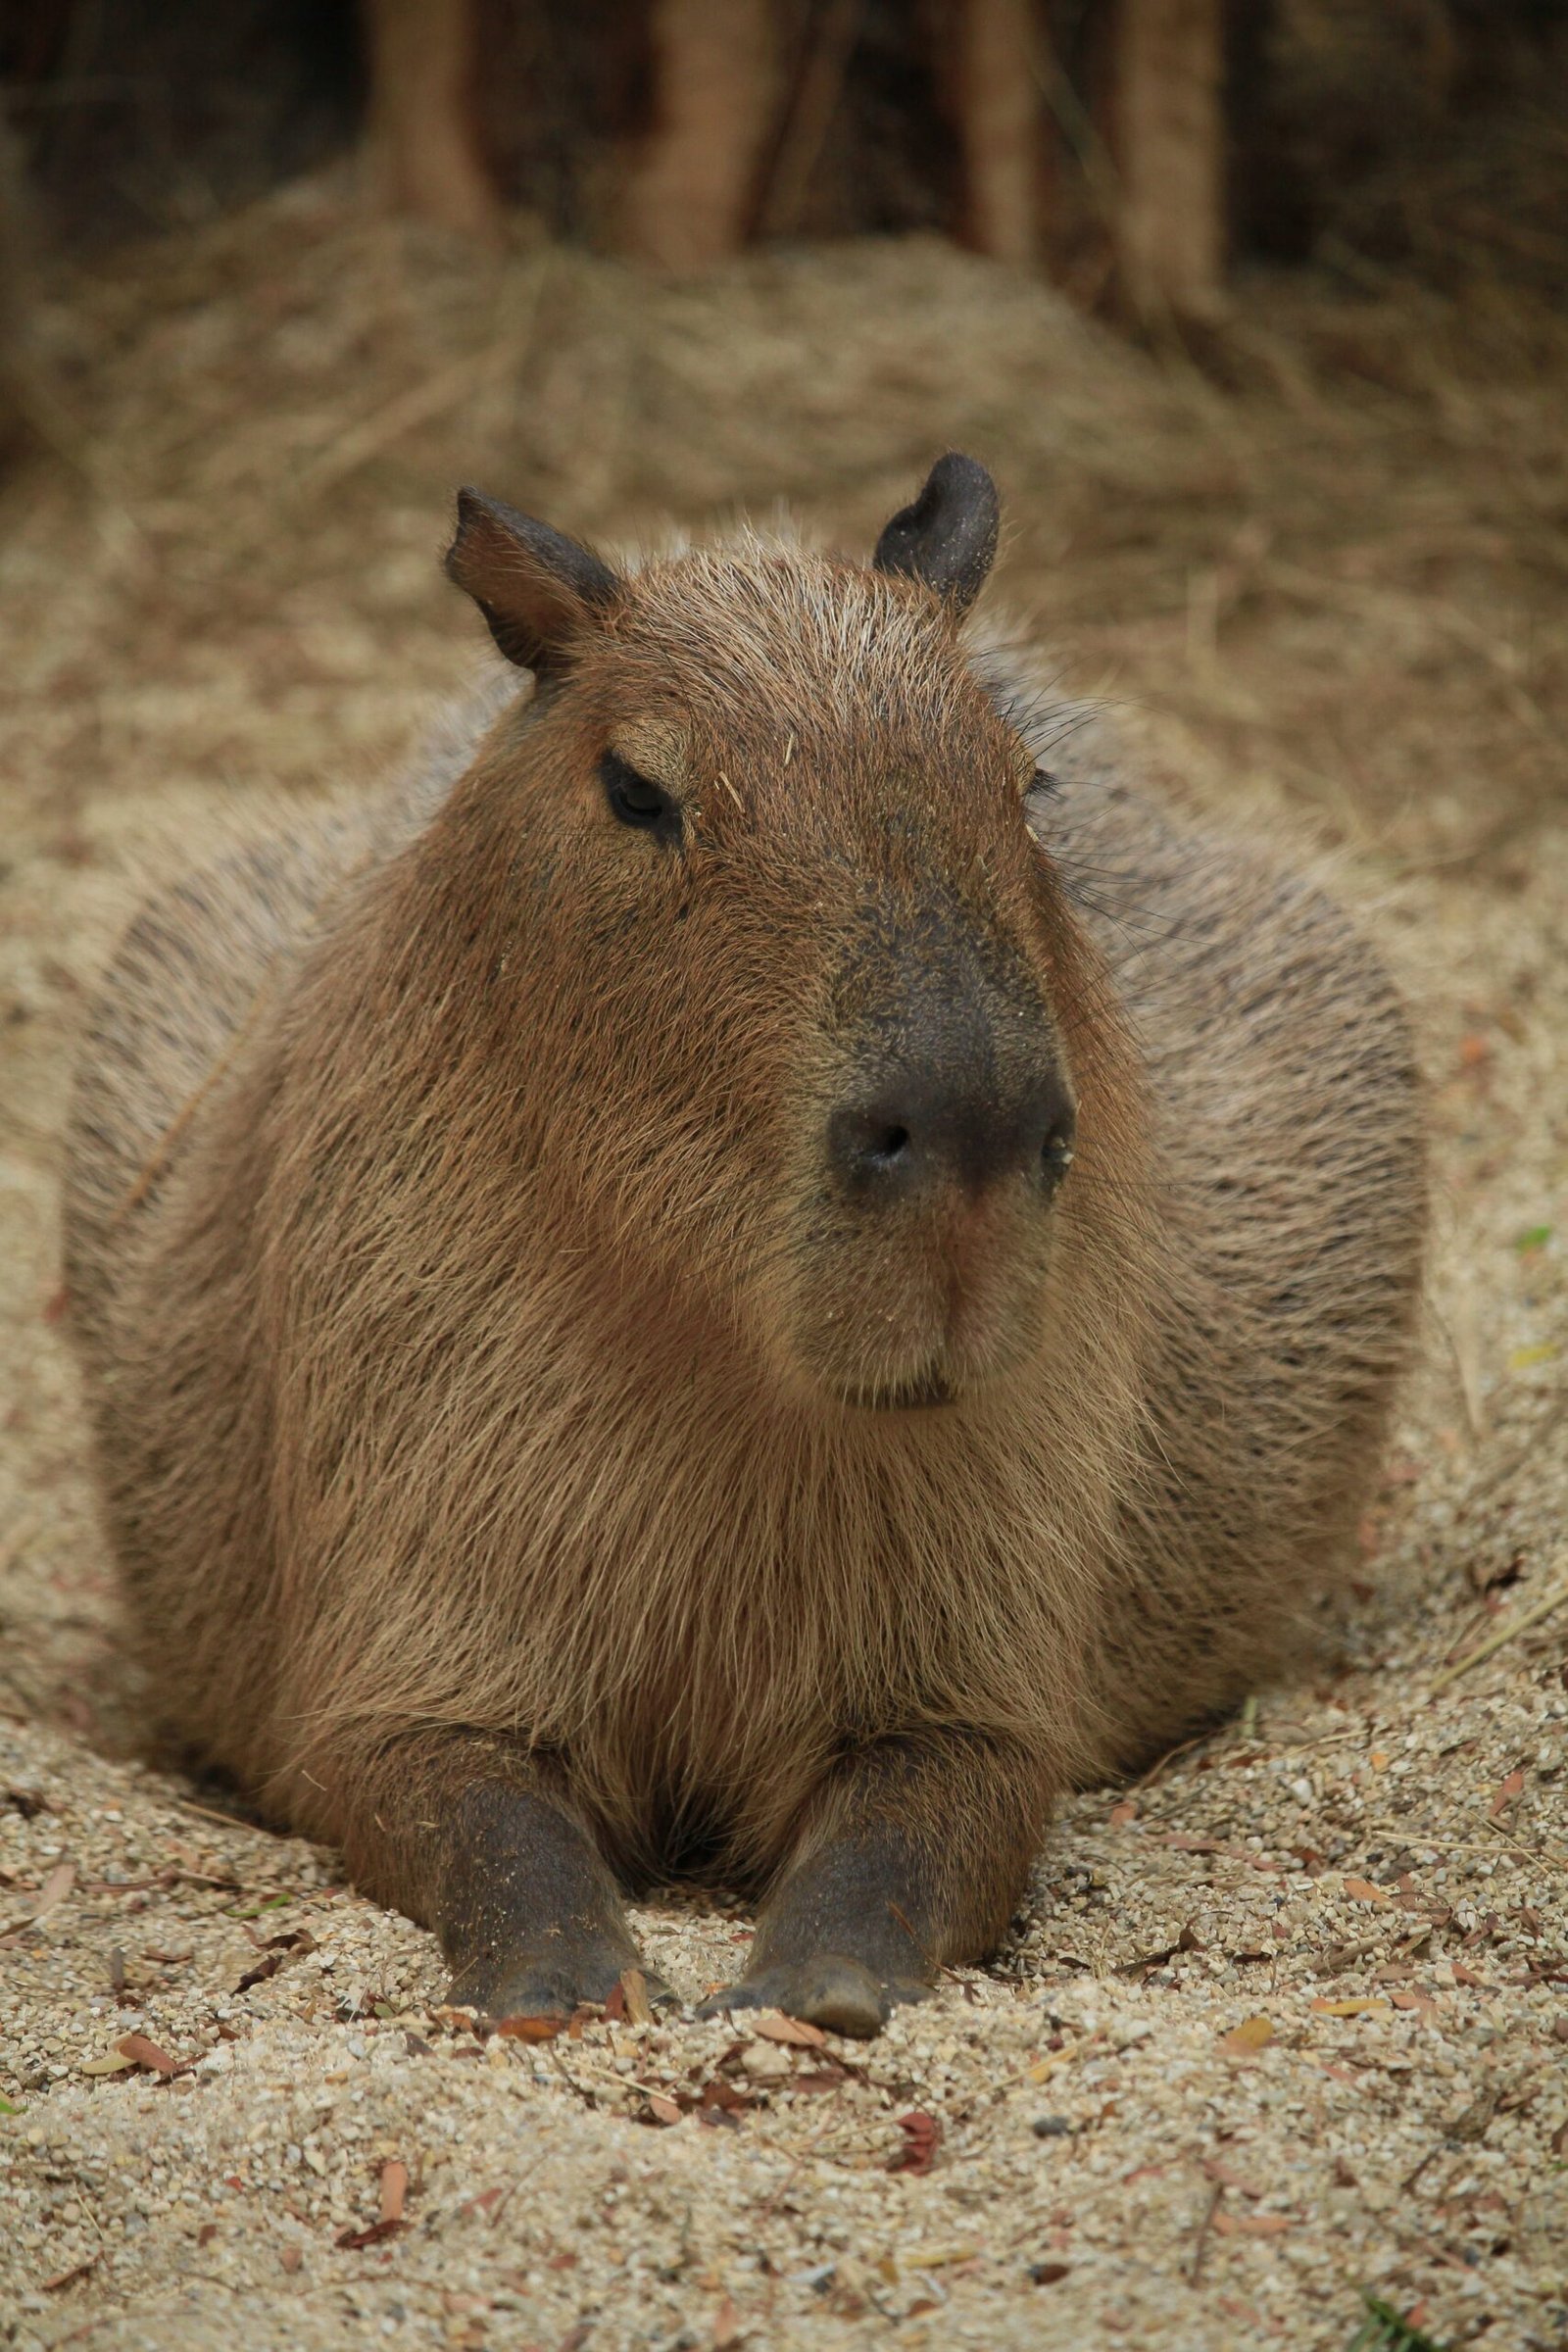 Can I Adopt a Capybara?